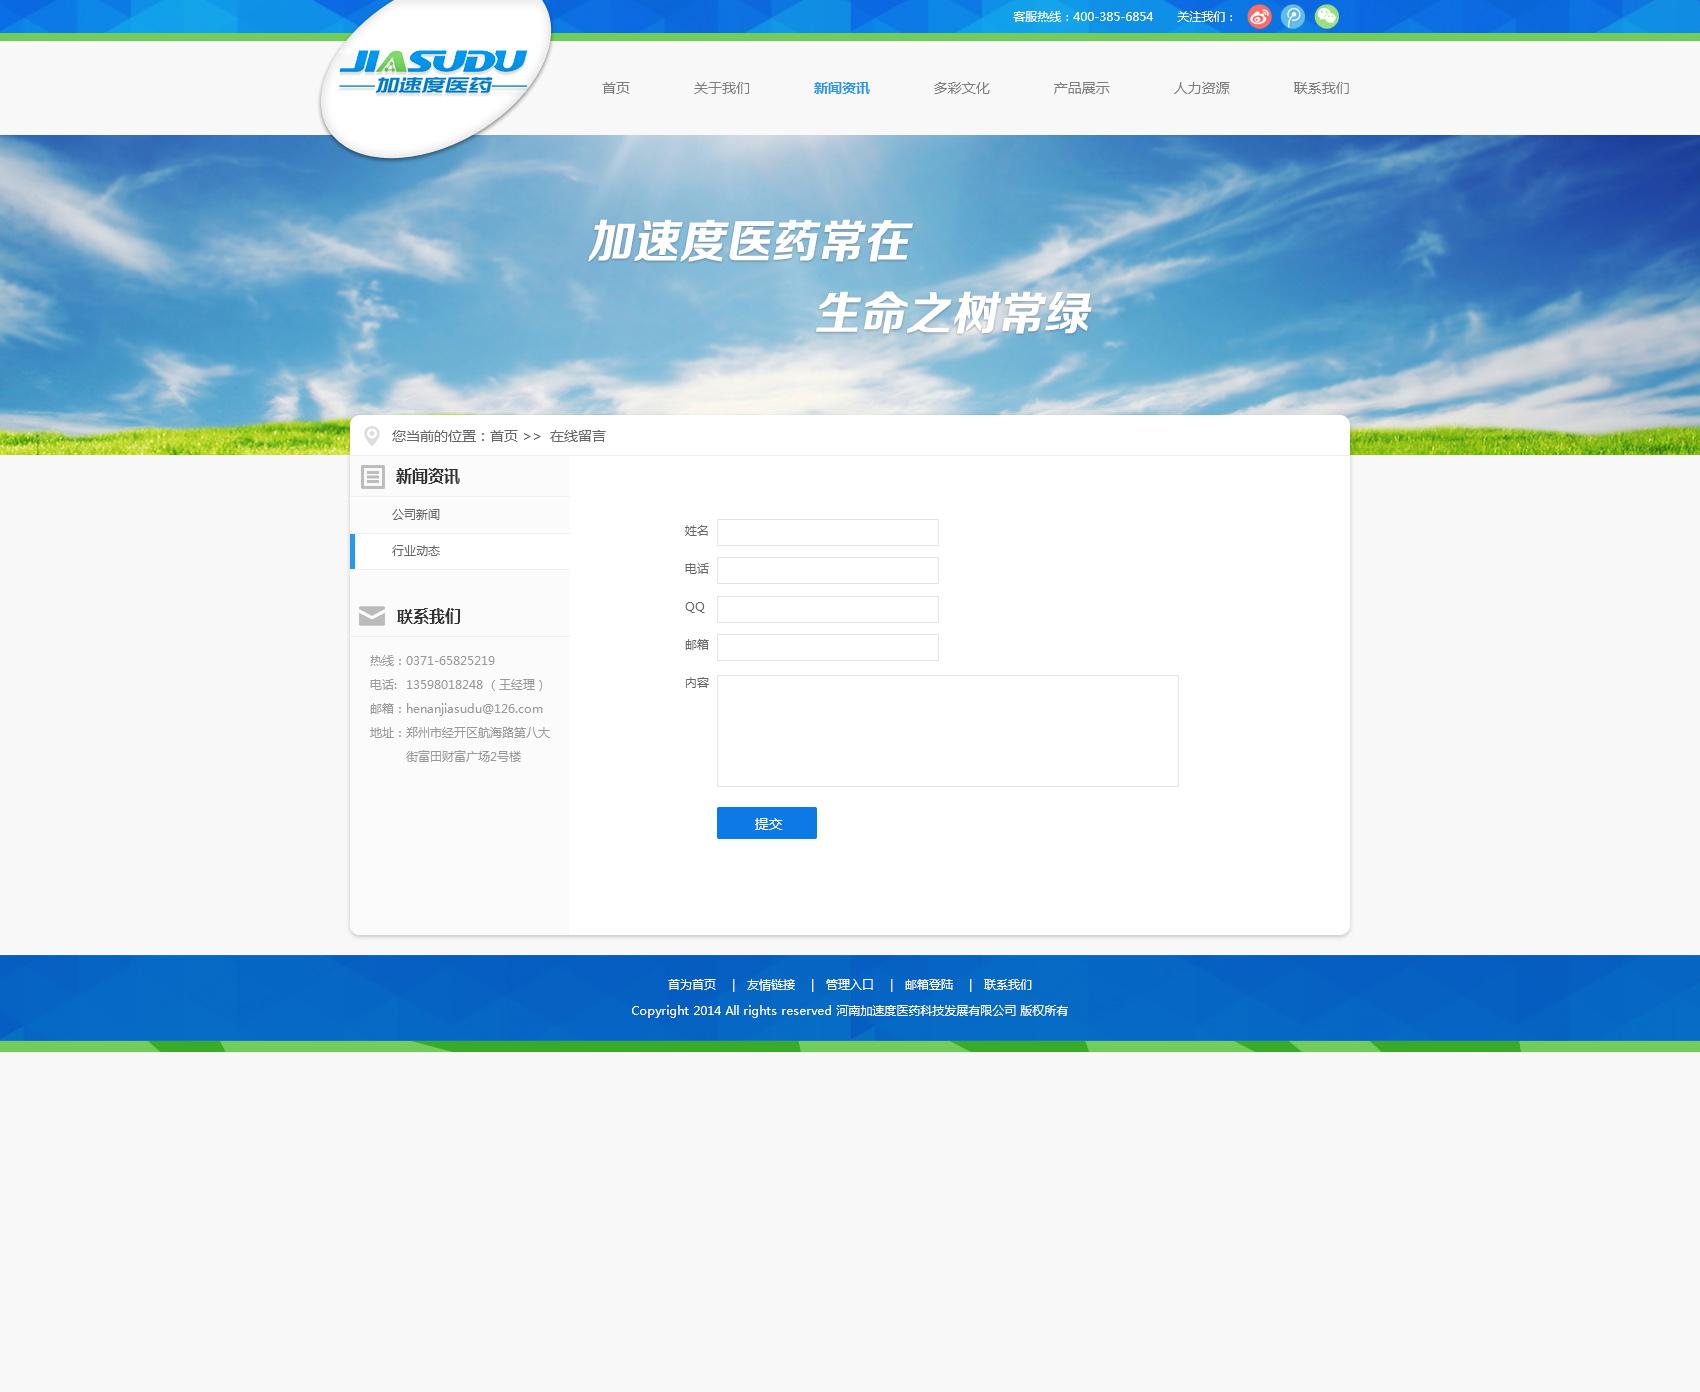 河南加速度医药公司网站制作留言板页面设计效果图